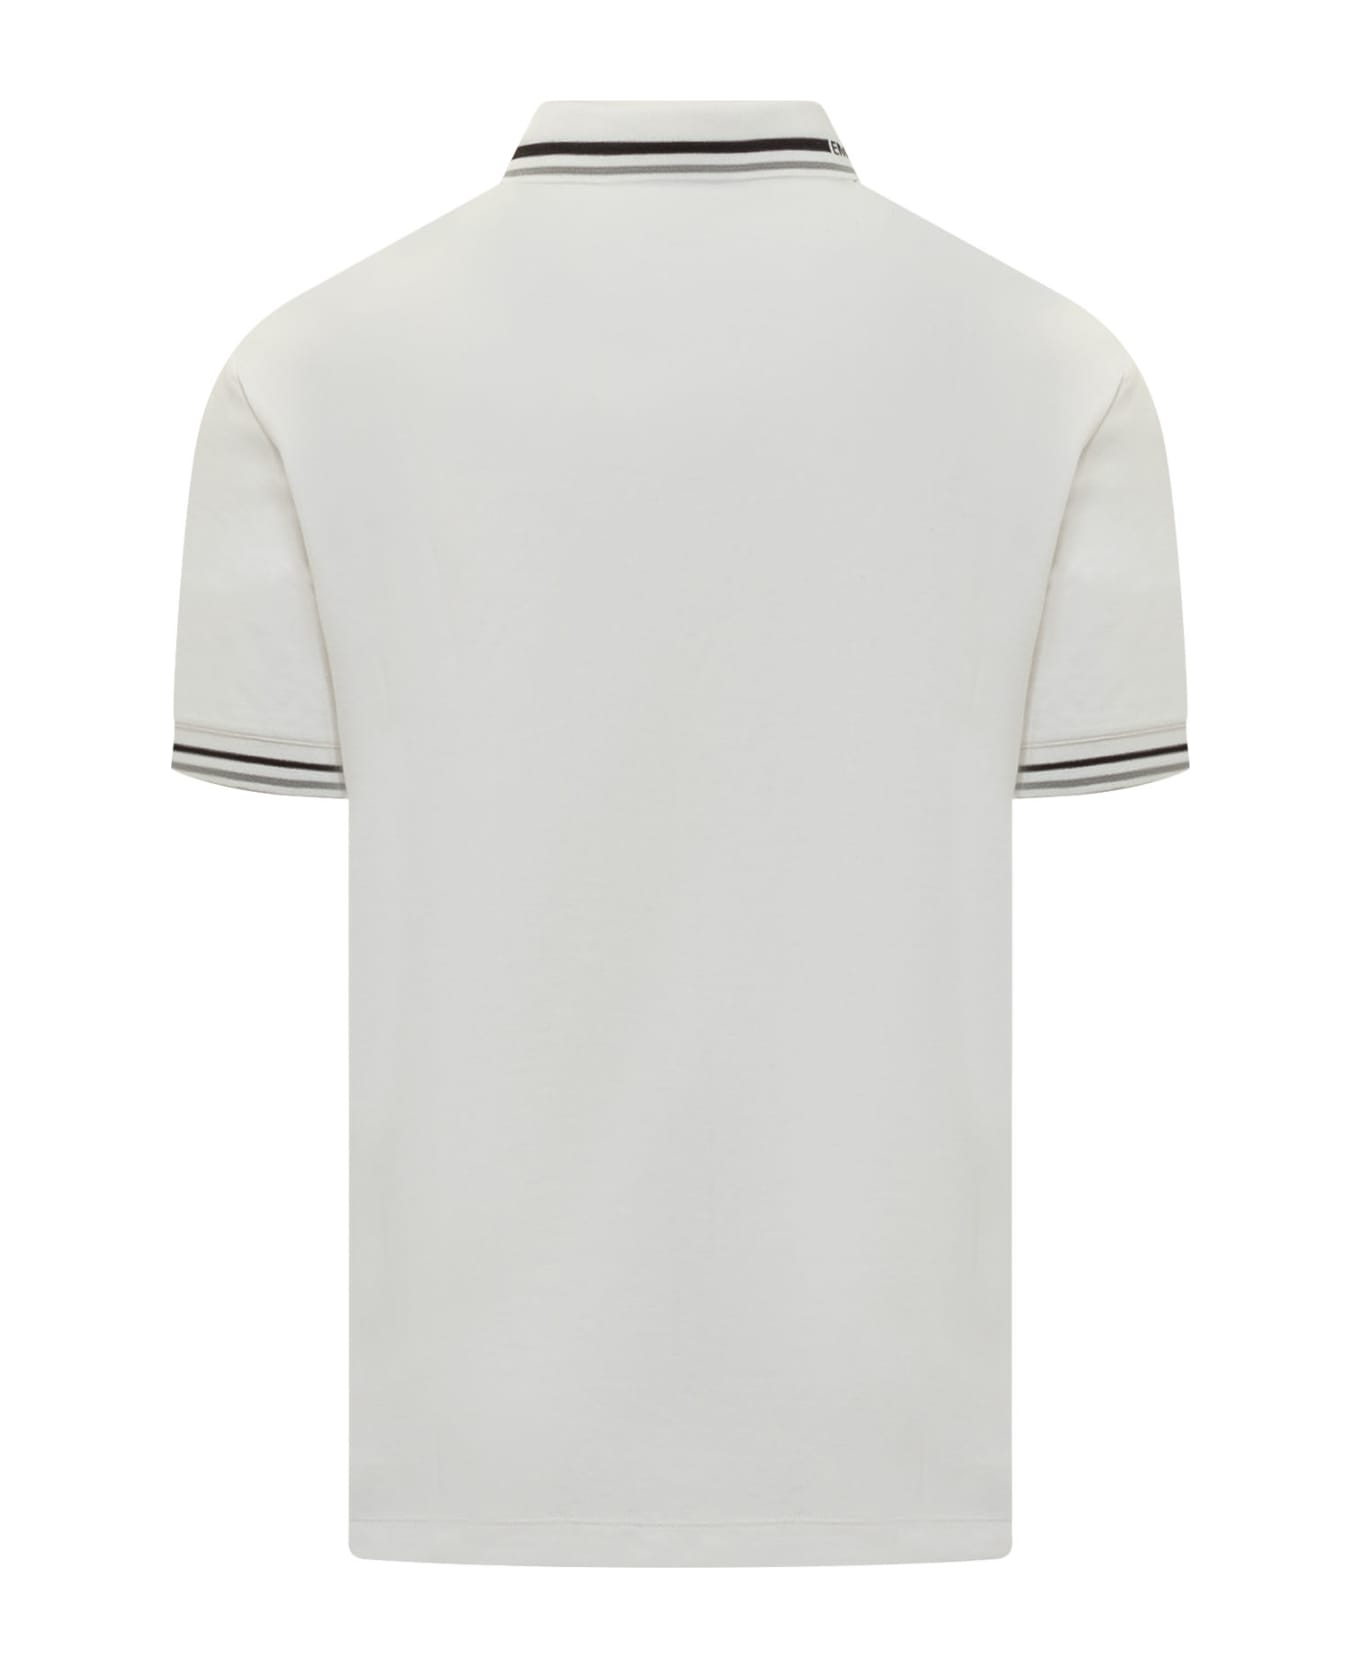 Emporio Armani Polo Shirt With Logo - White